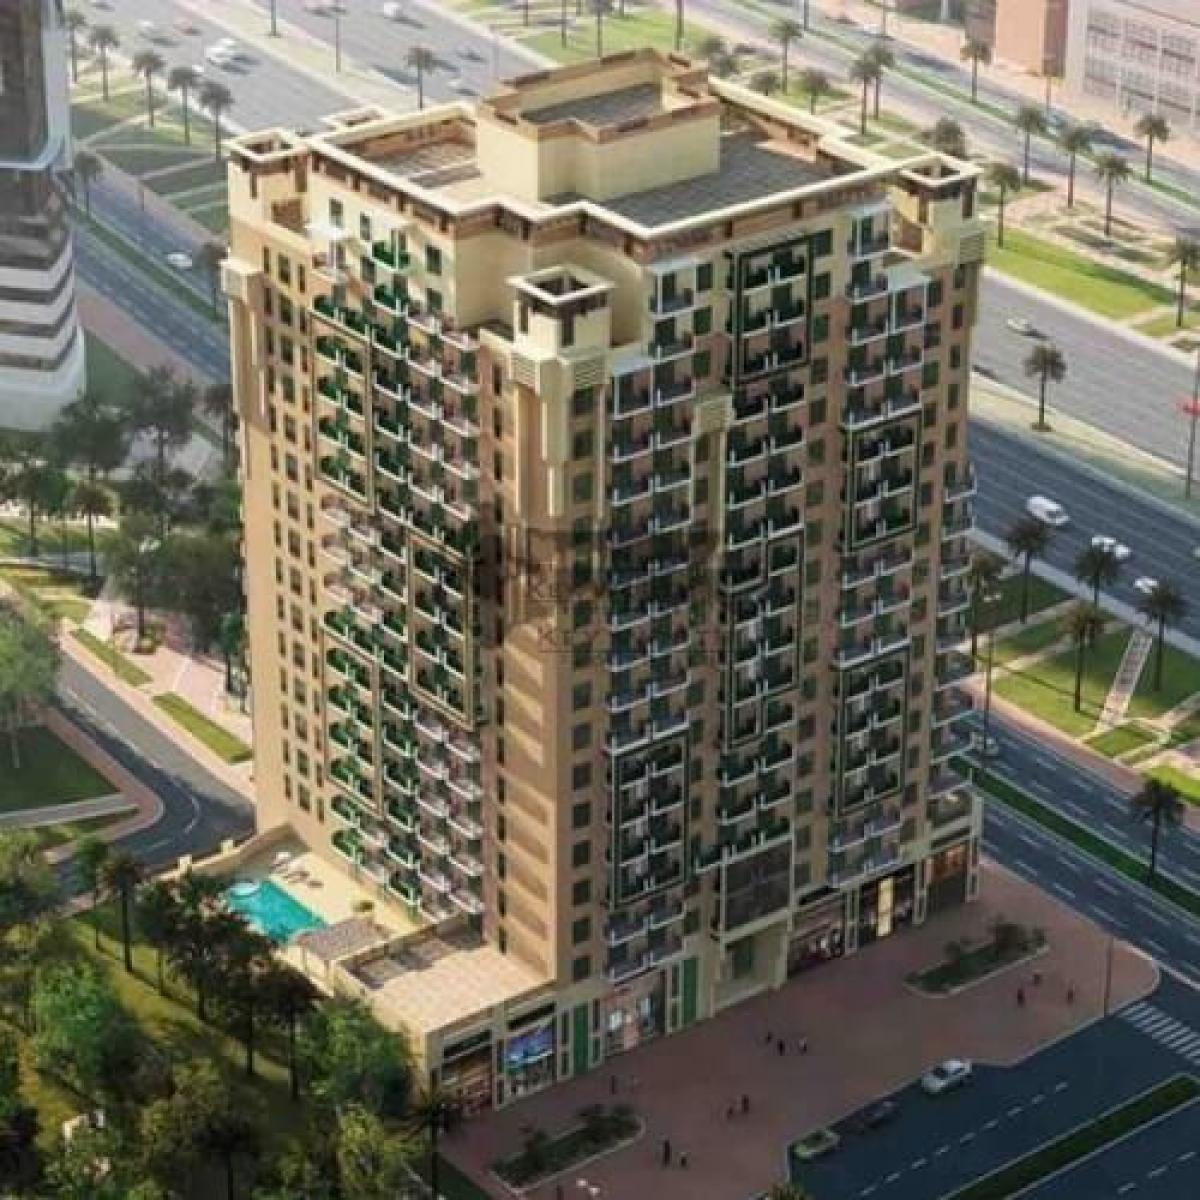 Picture of Apartment For Rent in Culture Village, Dubai, United Arab Emirates